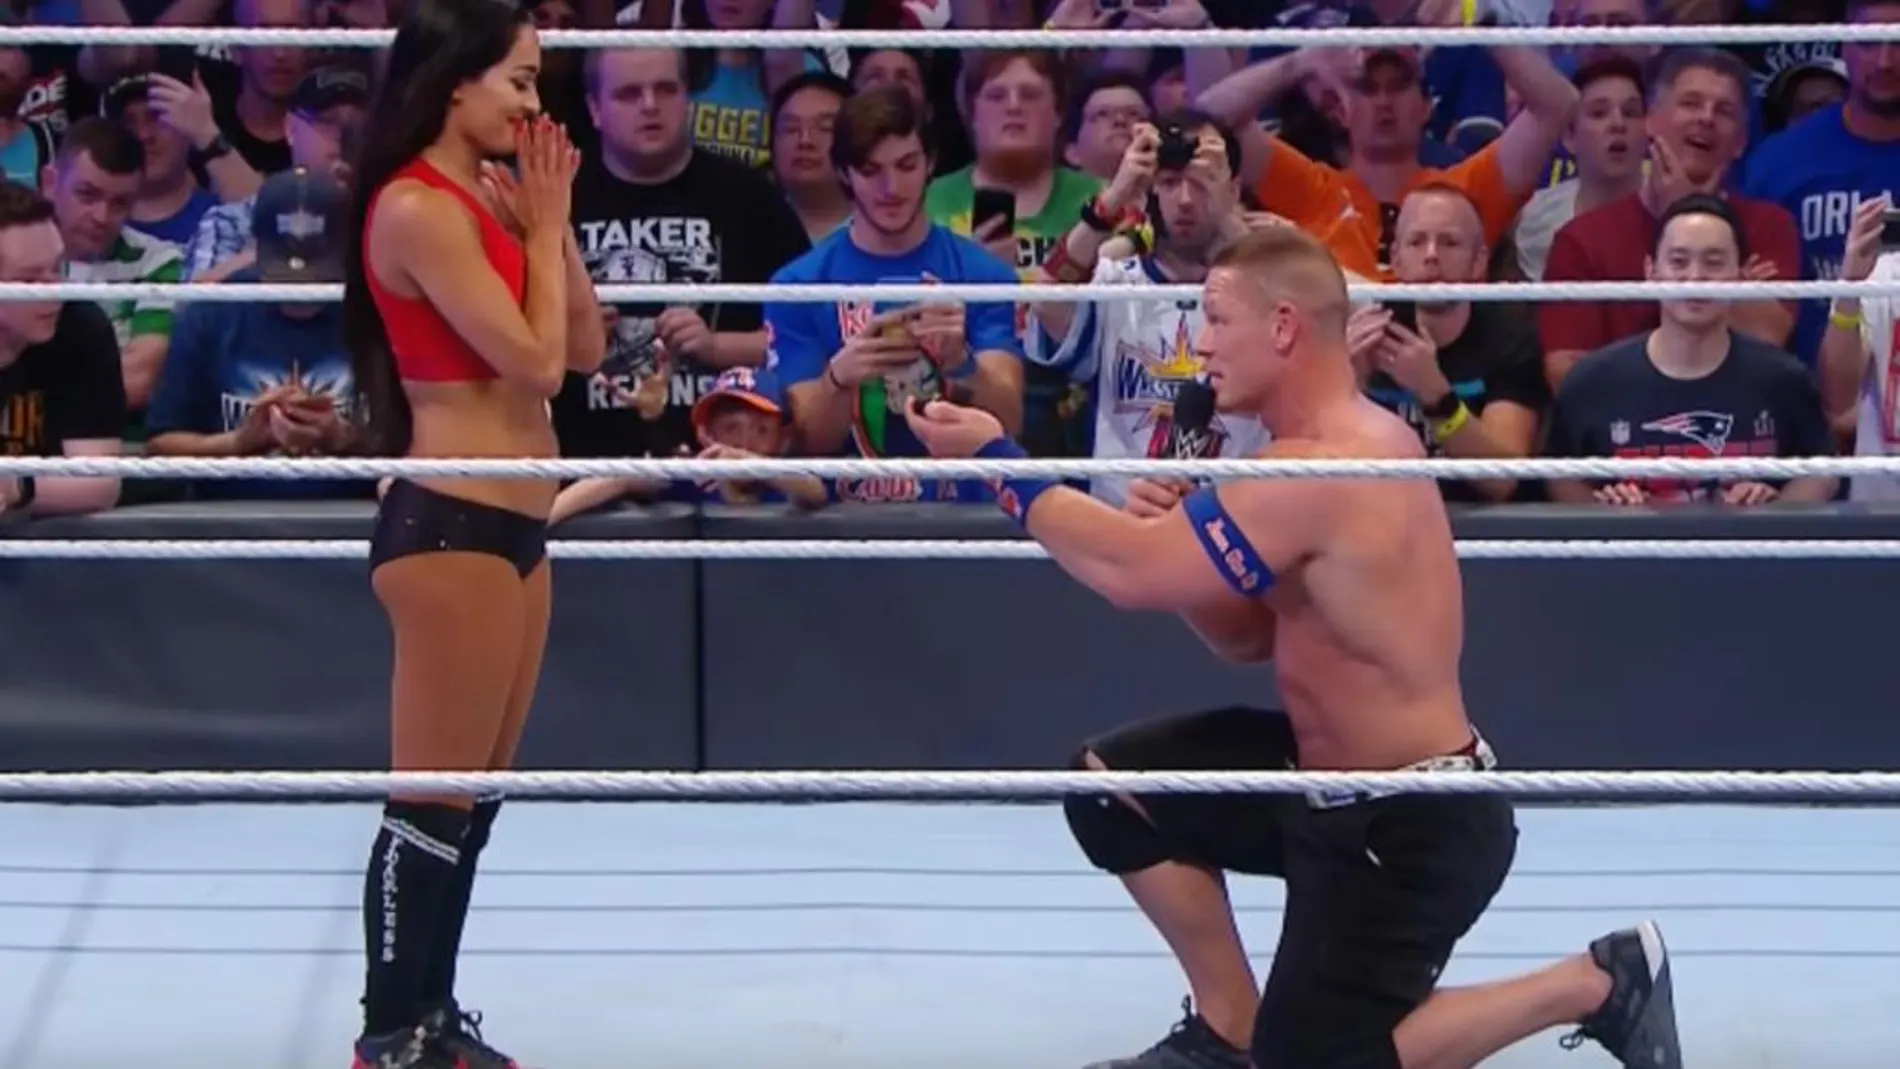 John Cena declarándose a Nikki Bella en el ring